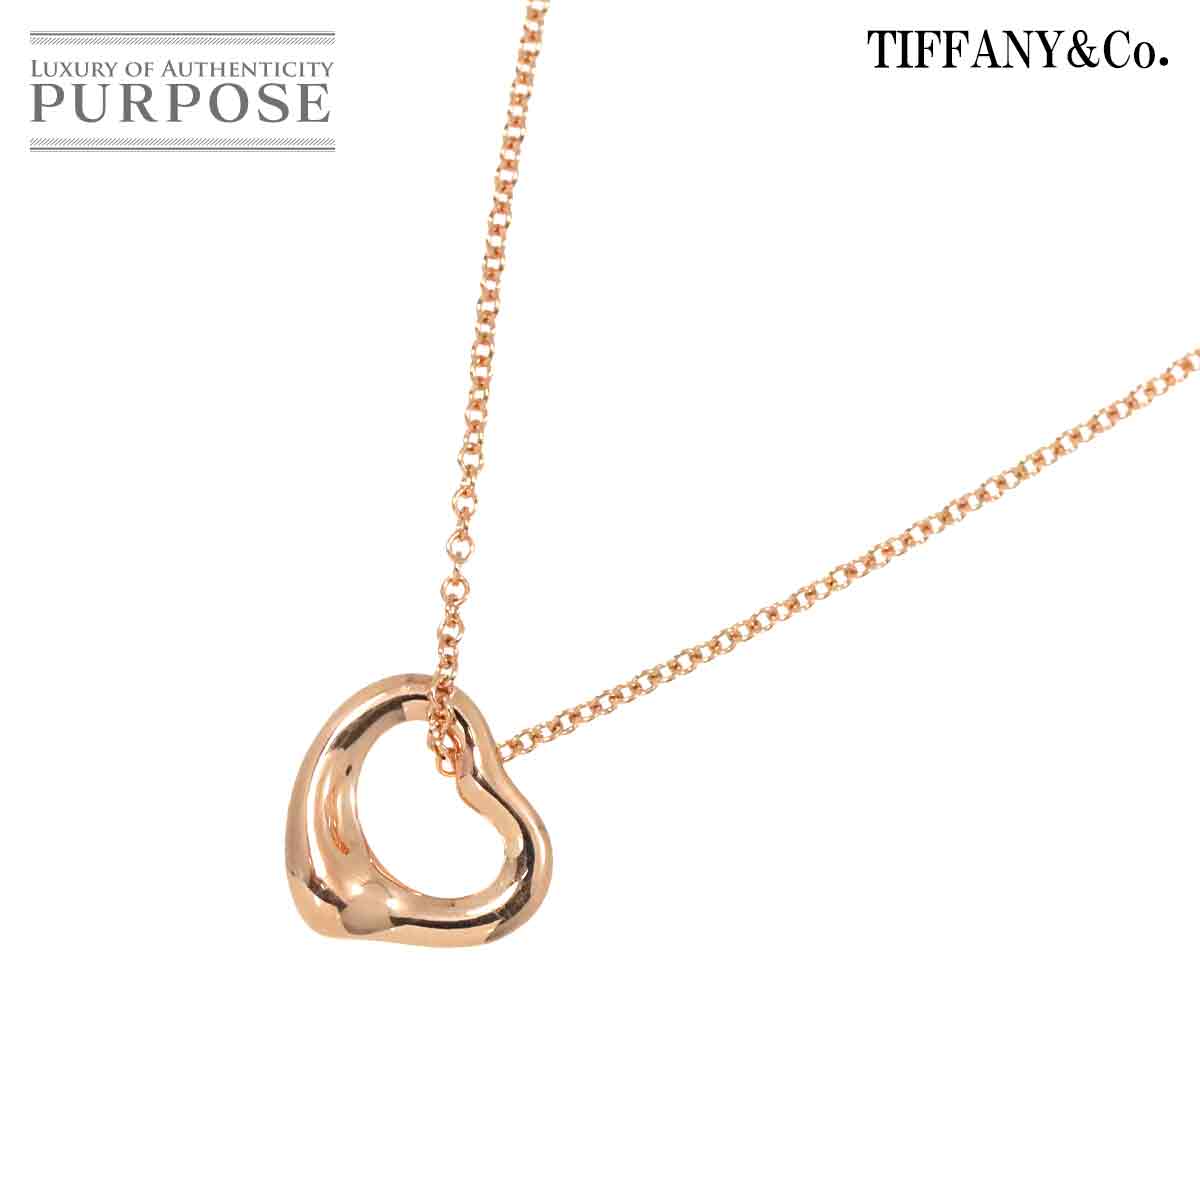 【新品同様】 ティファニー TIFFANY&Co. オープンハート 11mm ネックレス 40cm K18 PG ピンクゴールド 750 Open Heart Necklace【中古】